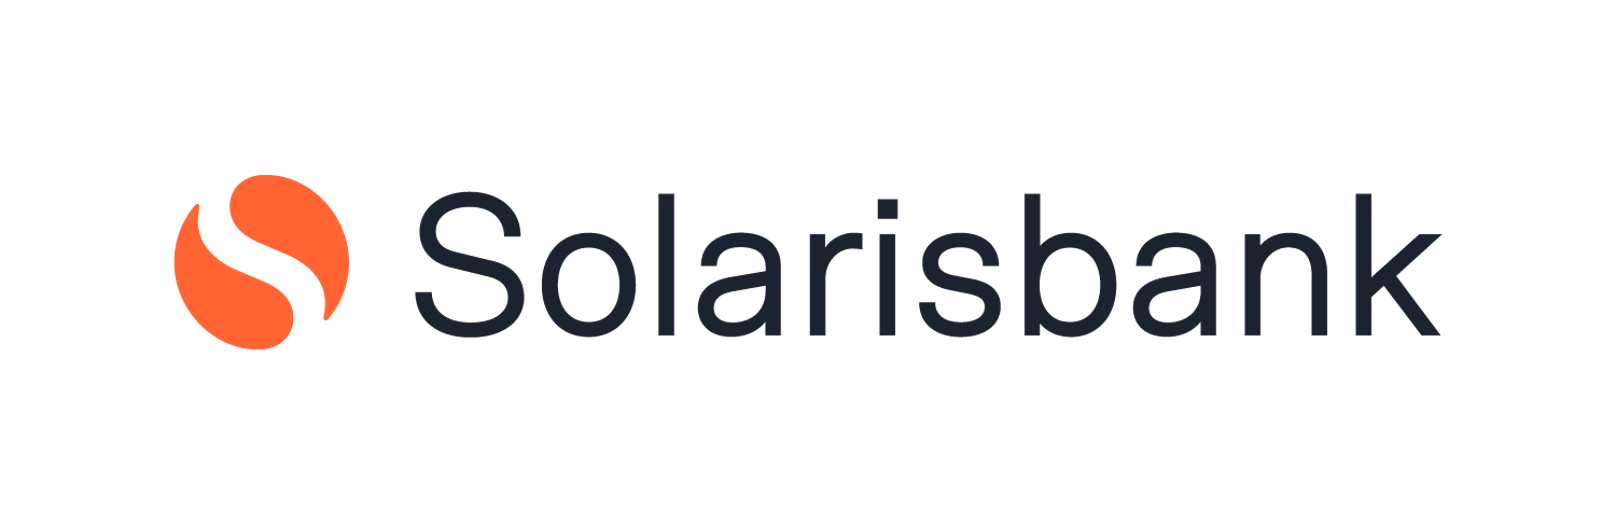 Solarisbank setzt vollständig auf AWS.